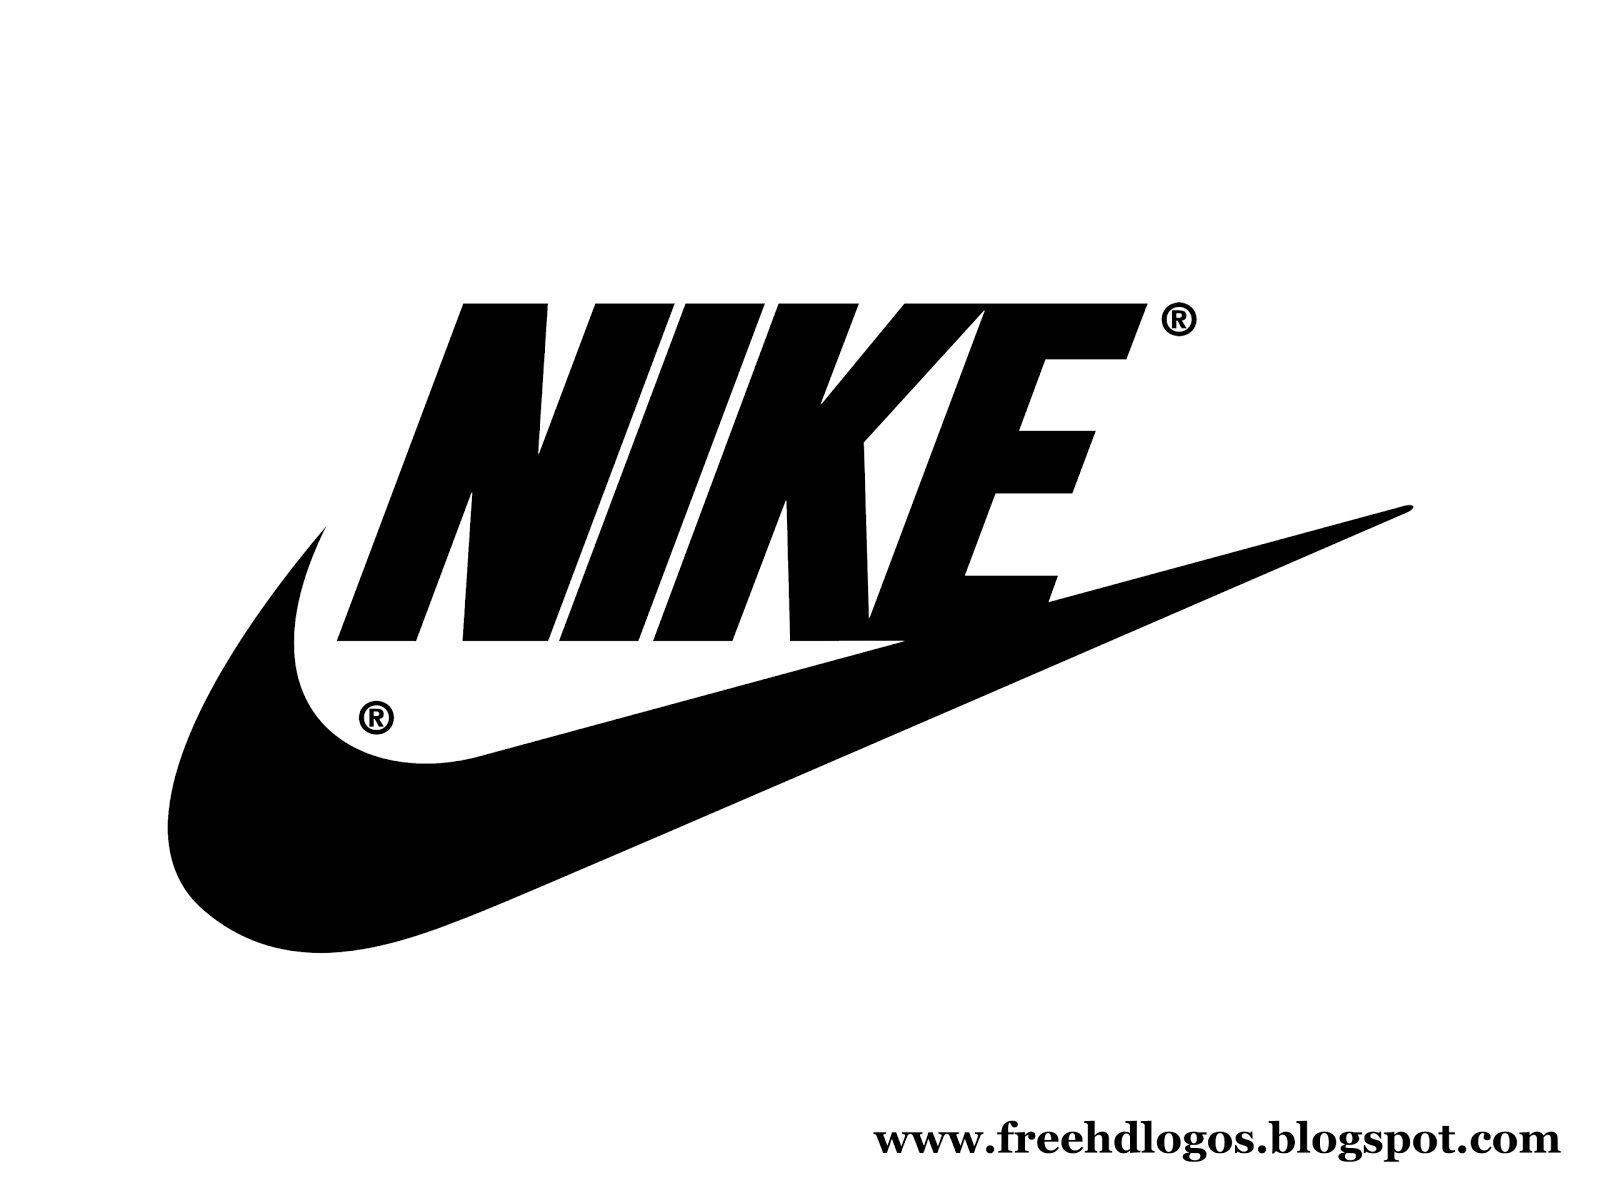 Cool Name Logo - Free HD Logos and Images: Nike Logos HD Large Size